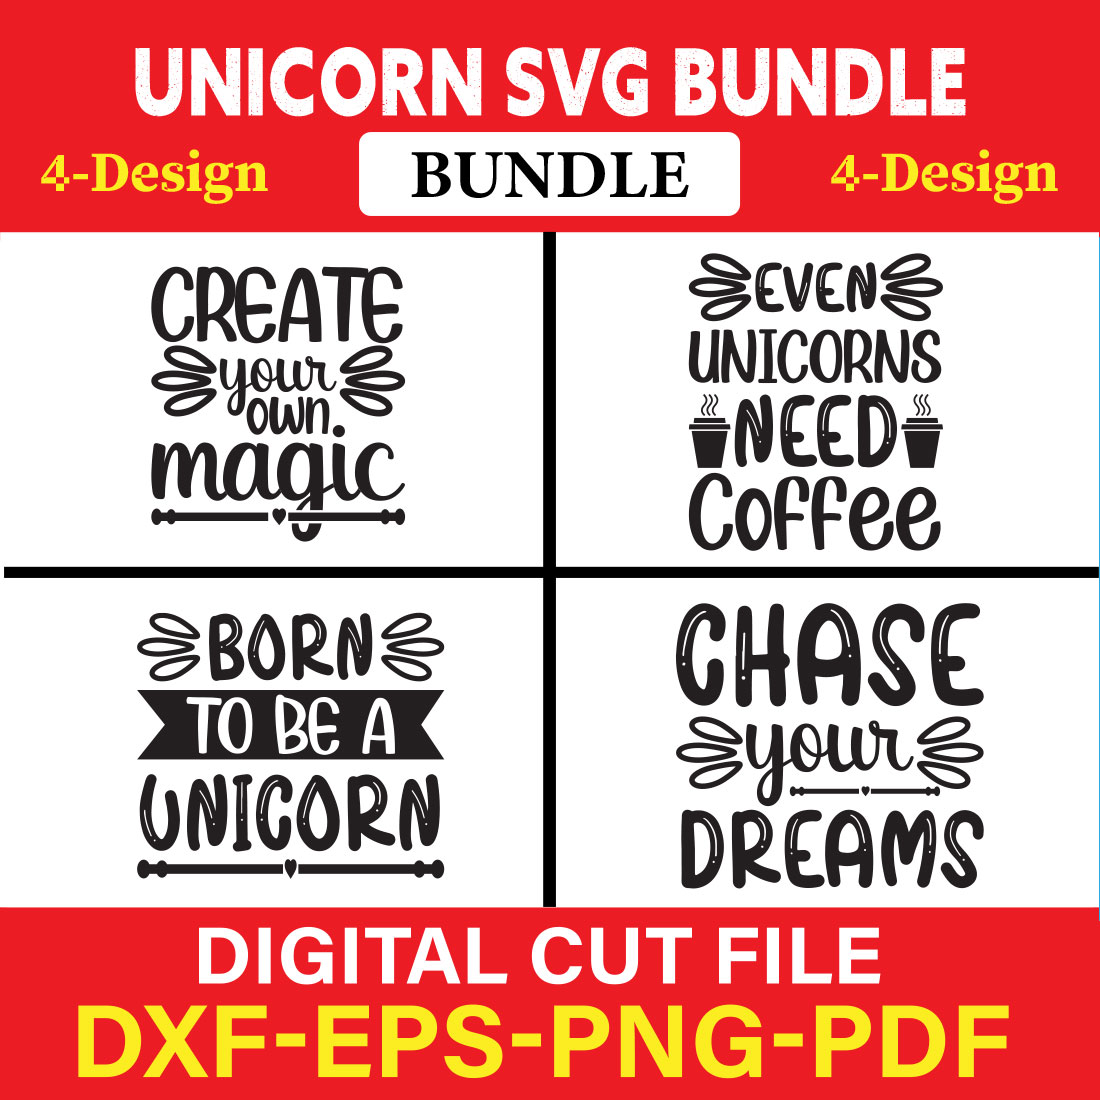 Unicorn T-shirt Design Bundle Vol-1 cover image.